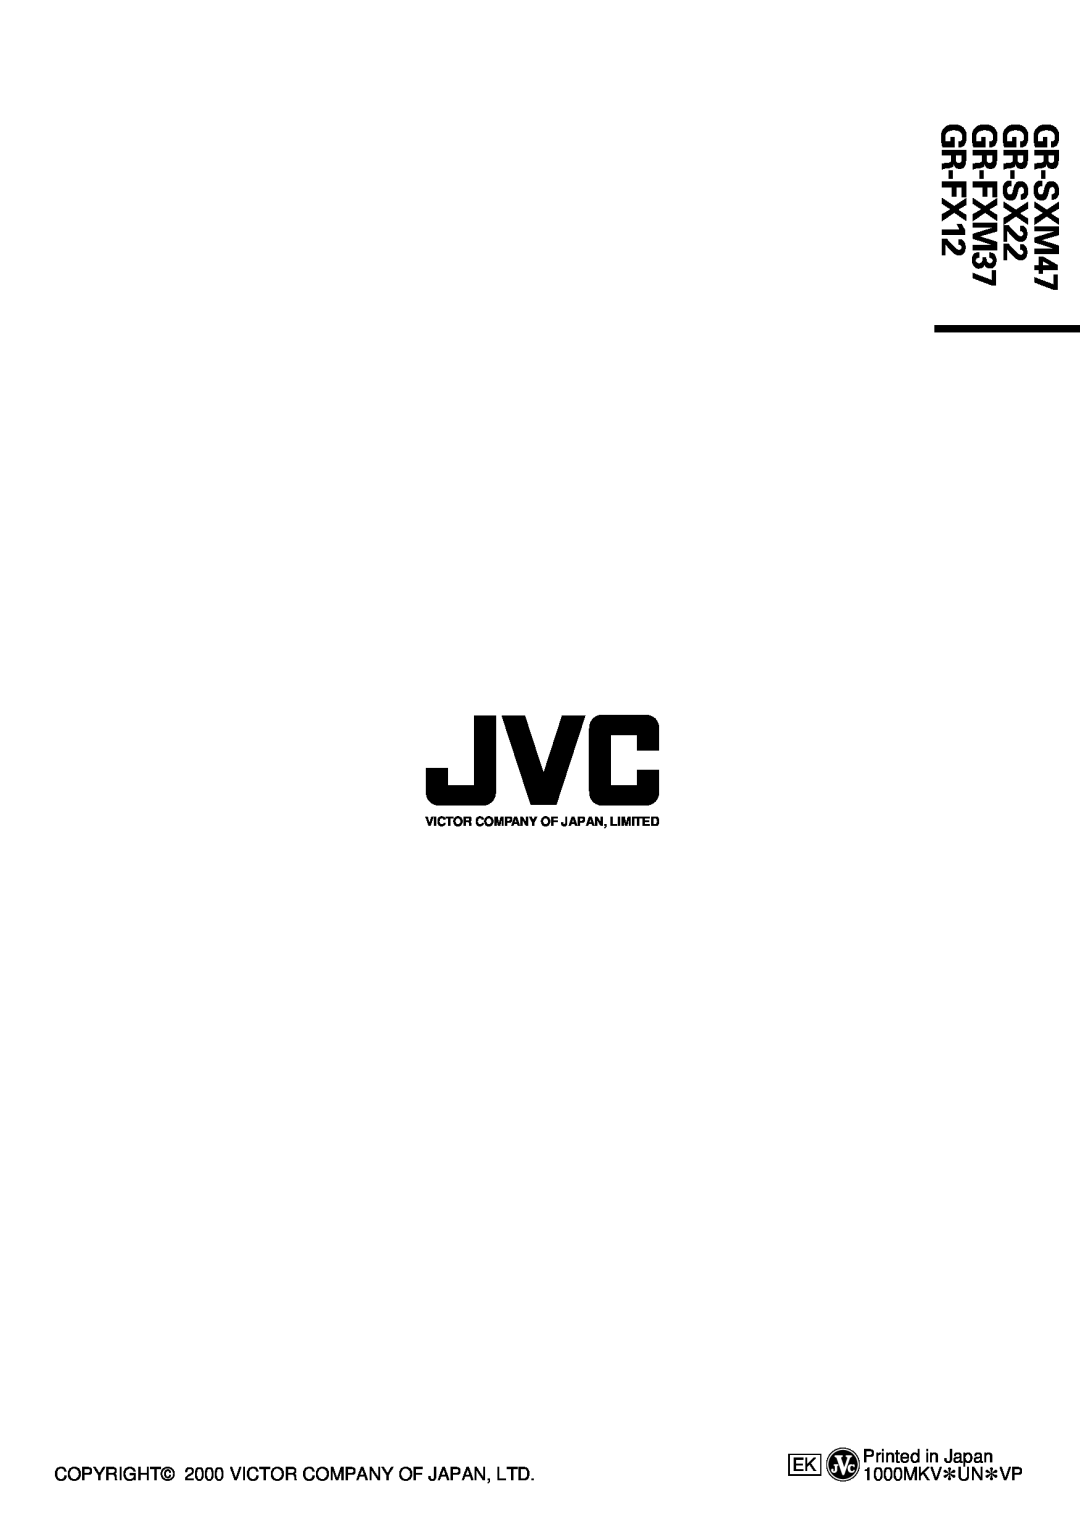 JVC specifications Printed in Japan 1000MKV*UN*VP, Victor Company Of Japan, Limited, GR-SXM47 GR-SX22 GR-FXM37 GR-FX12 